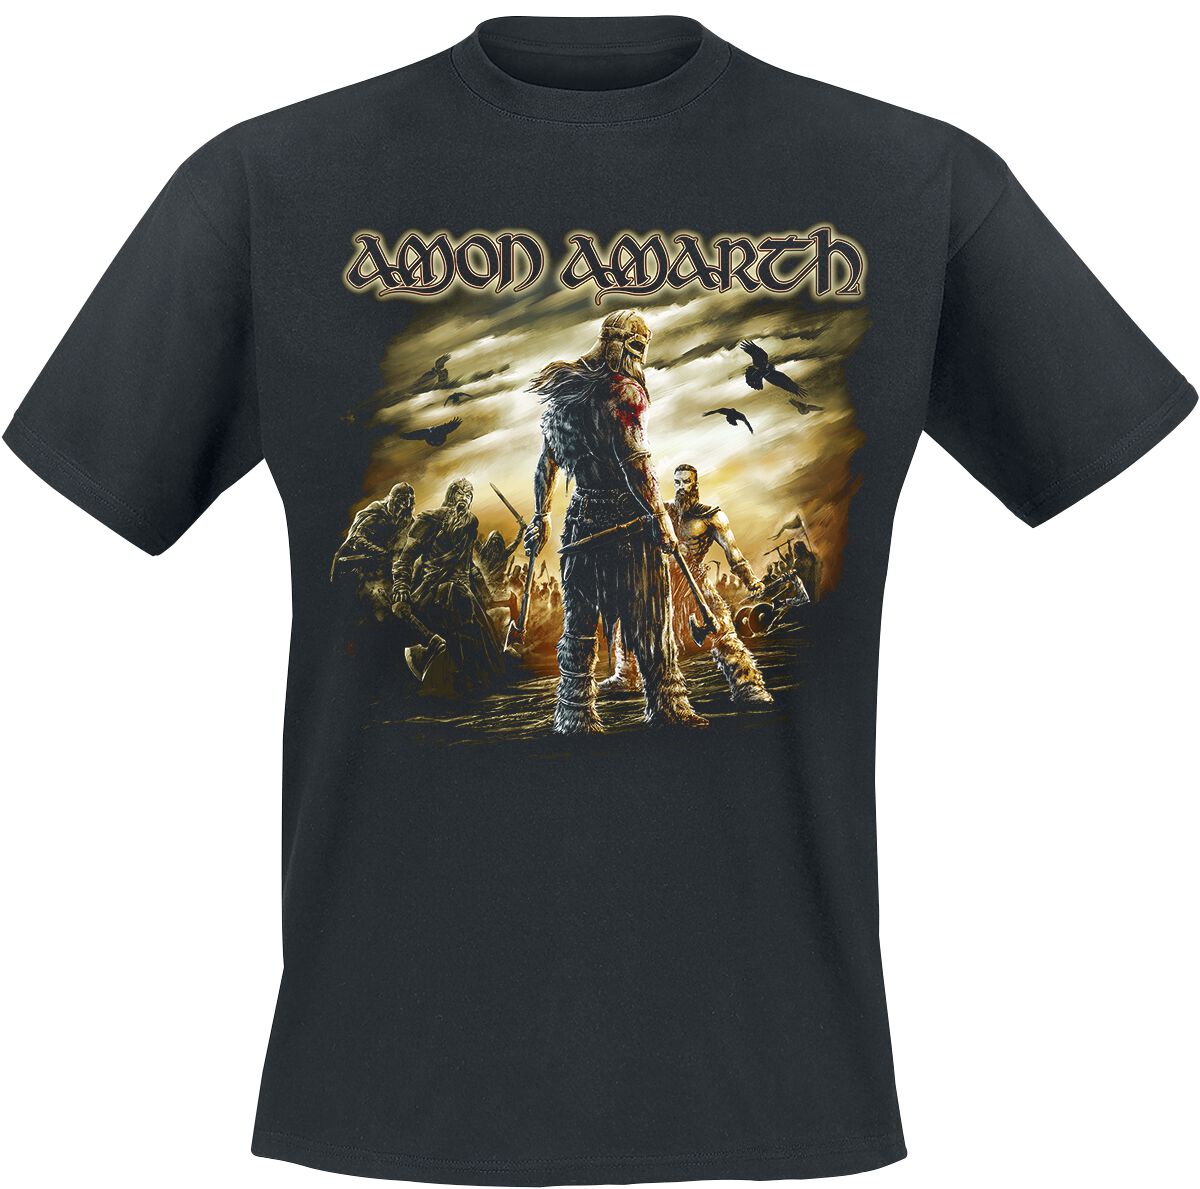 Amon Amarth T-Shirt - Get In The Ring - M bis XL - für Männer - Größe XL - schwarz  - Lizenziertes Merchandise!